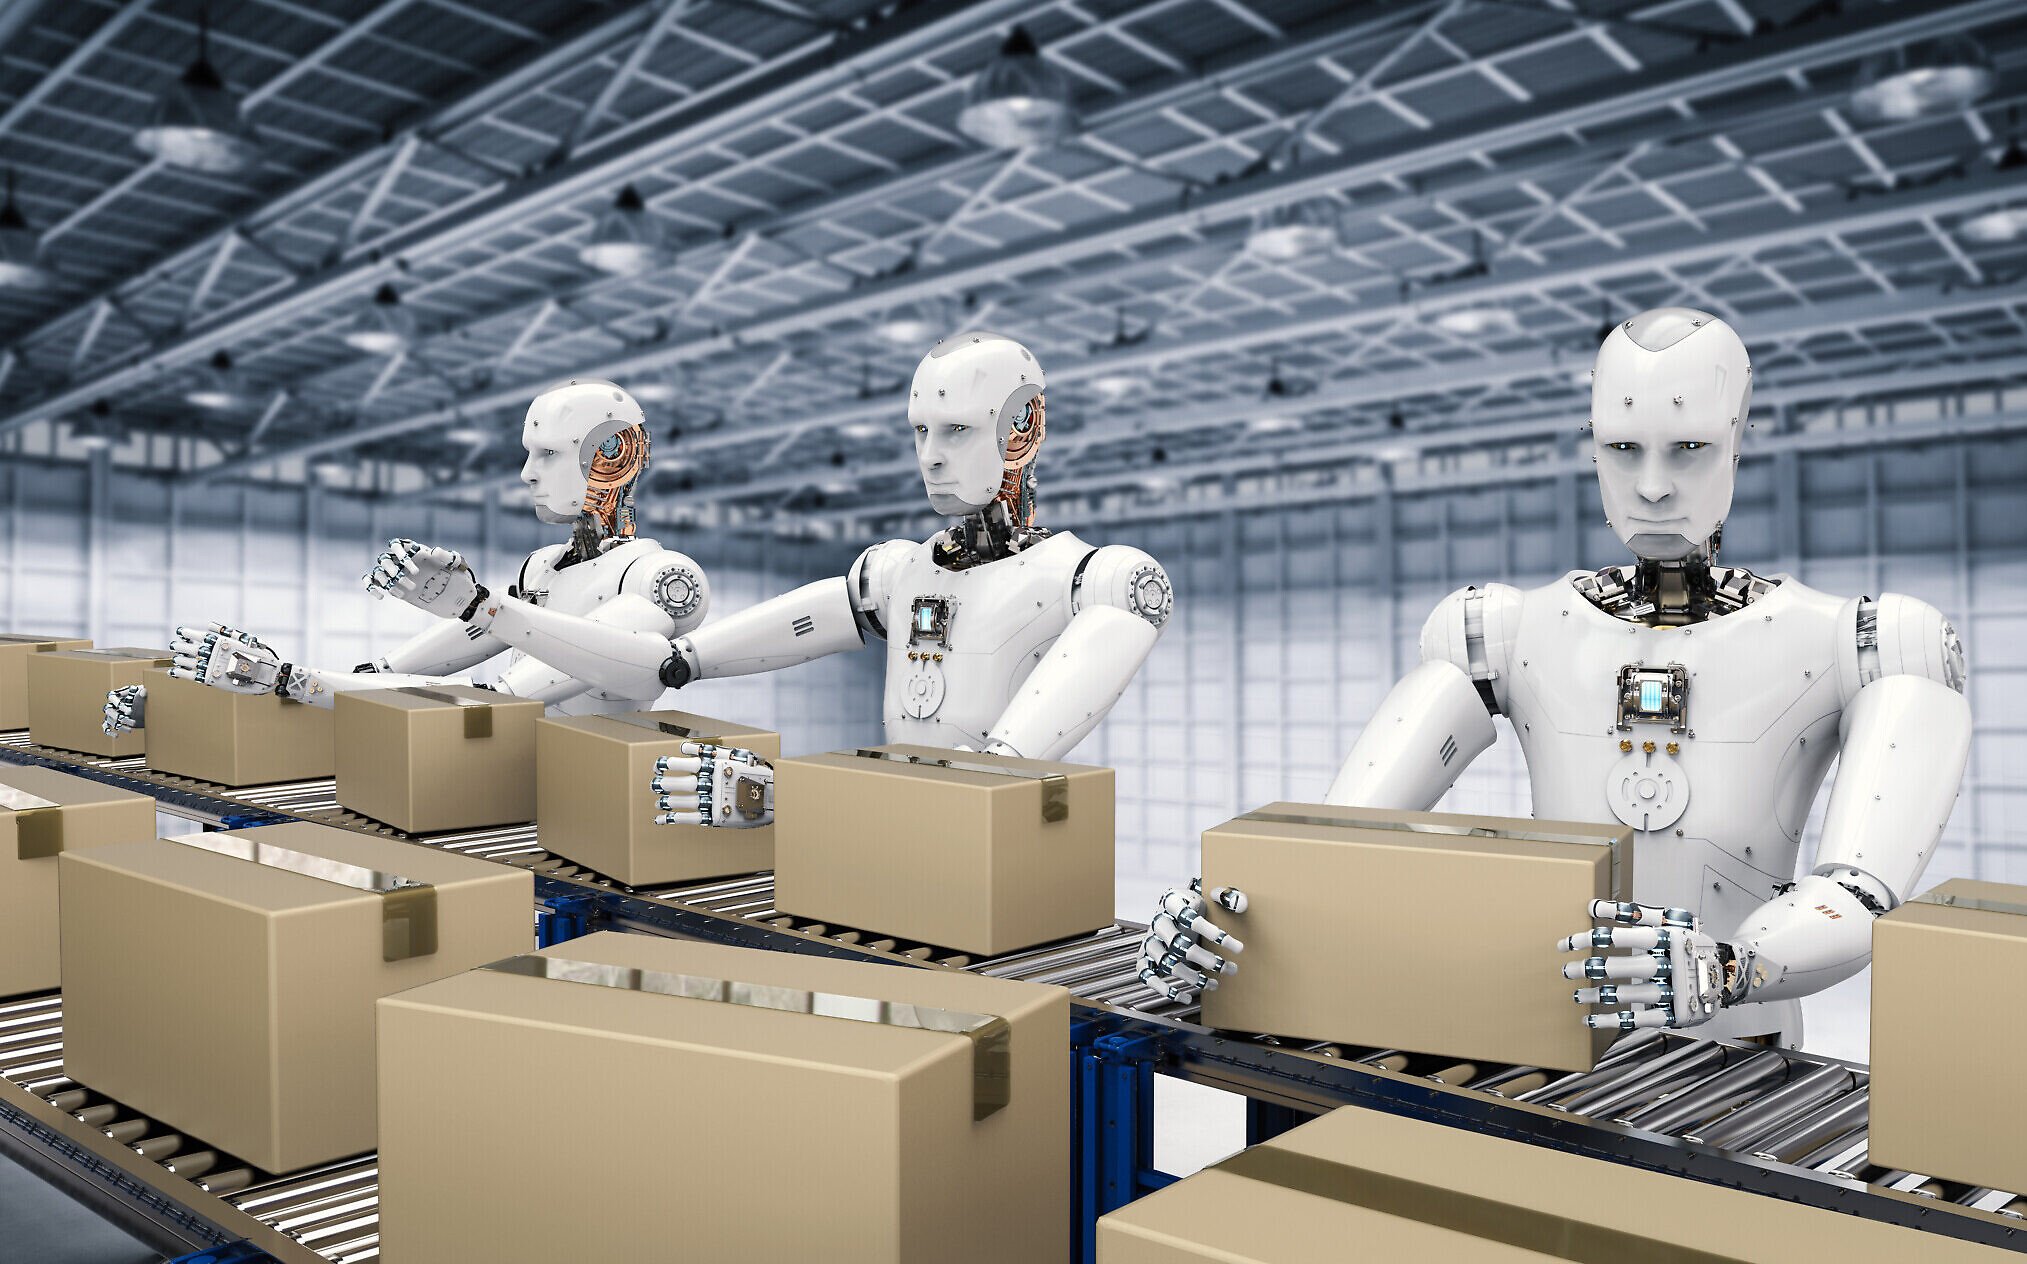  Rămase fără mână de lucru, companiile americane au cumpărat un număr record de roboţi